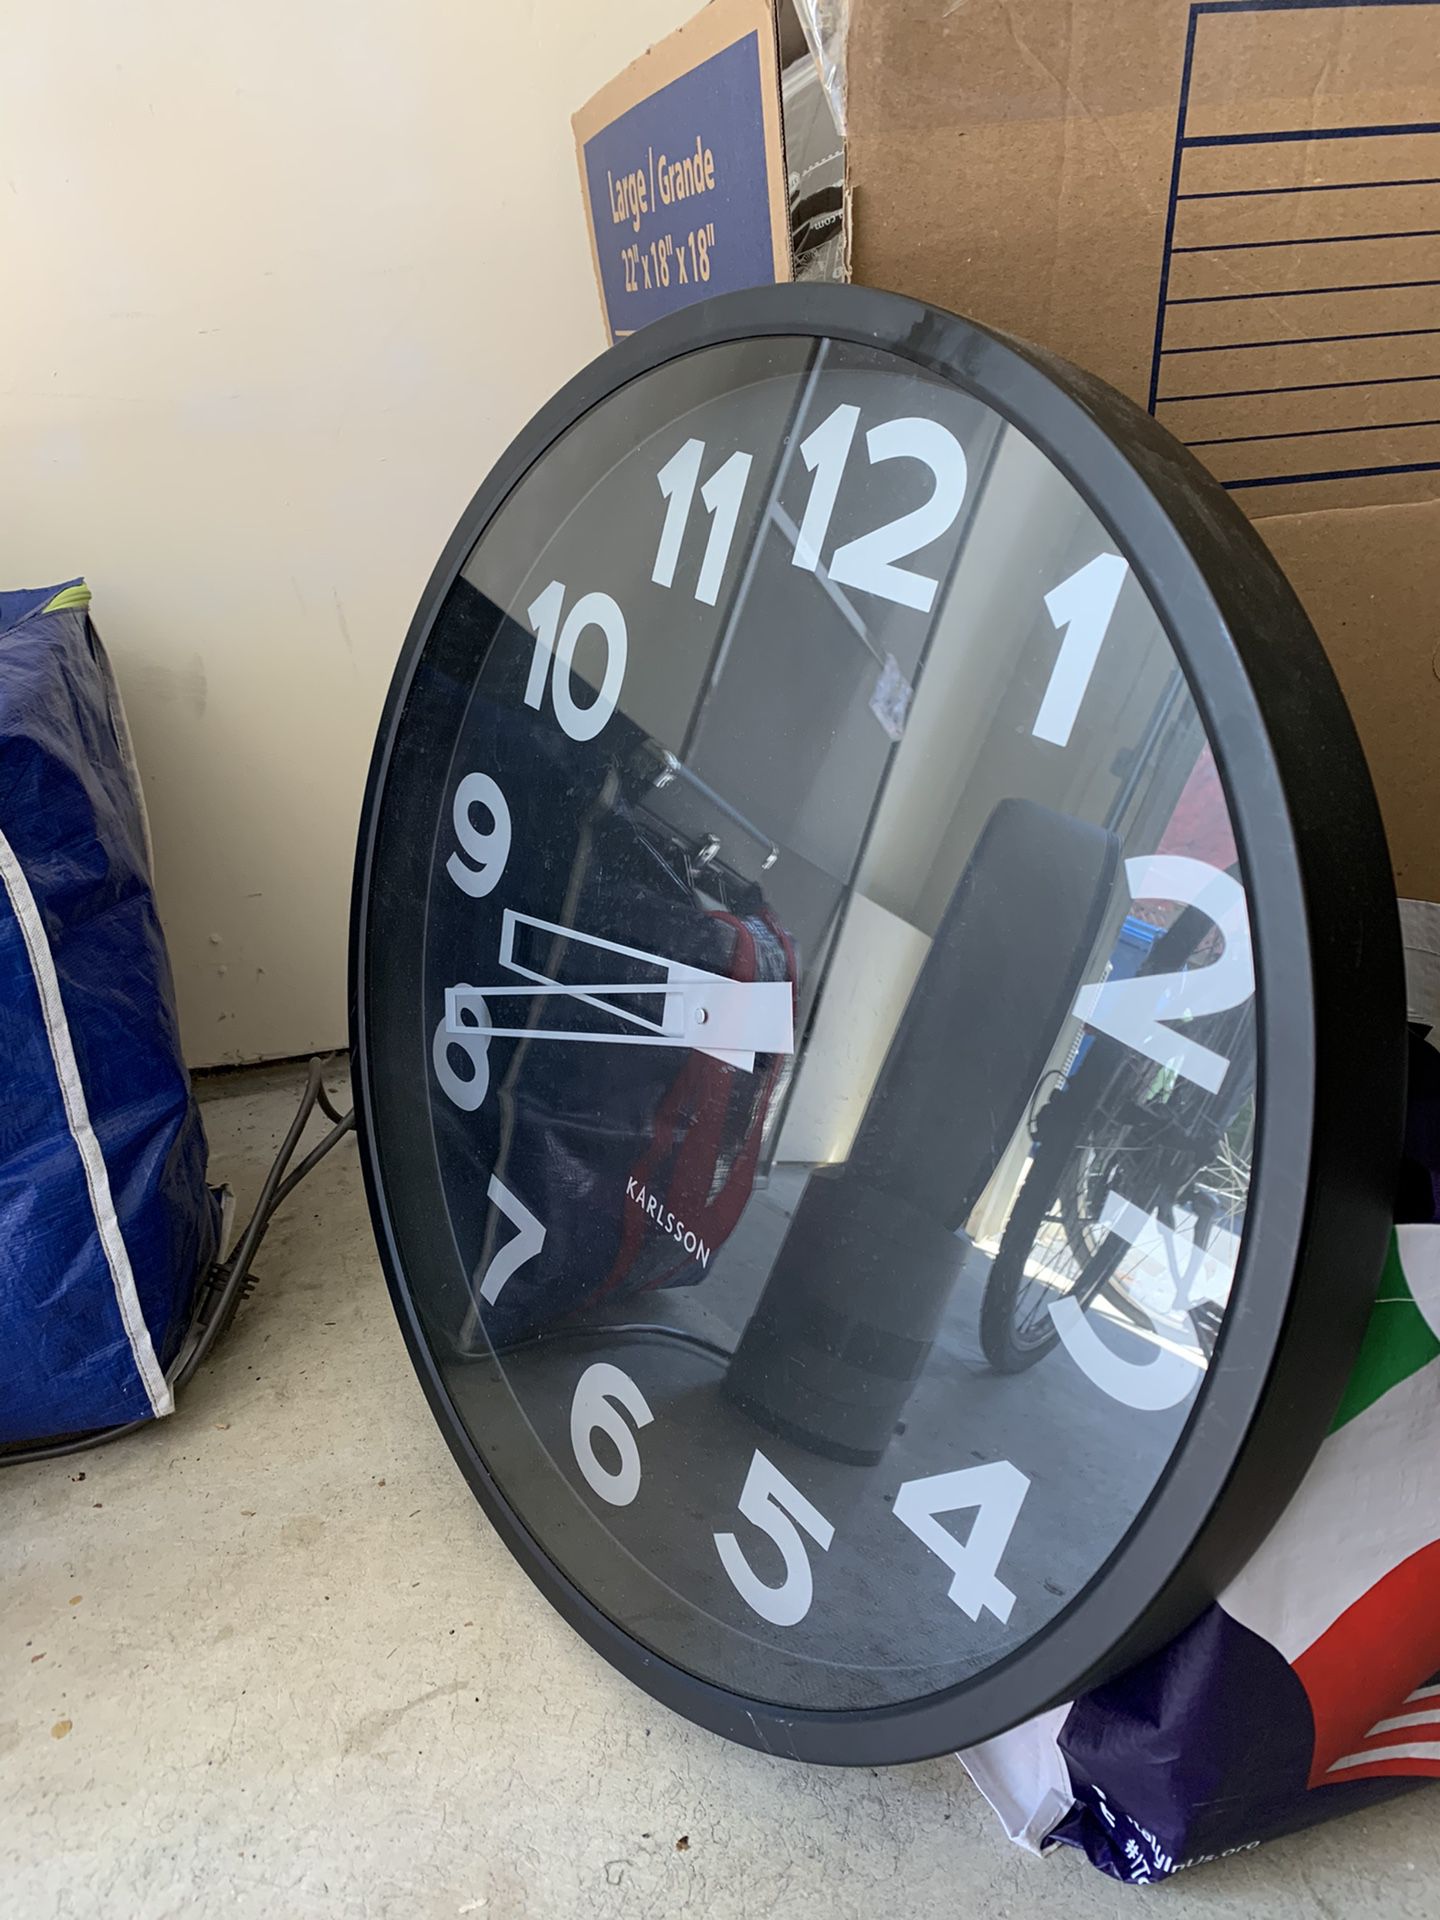 Wall Clock 23” Diameter